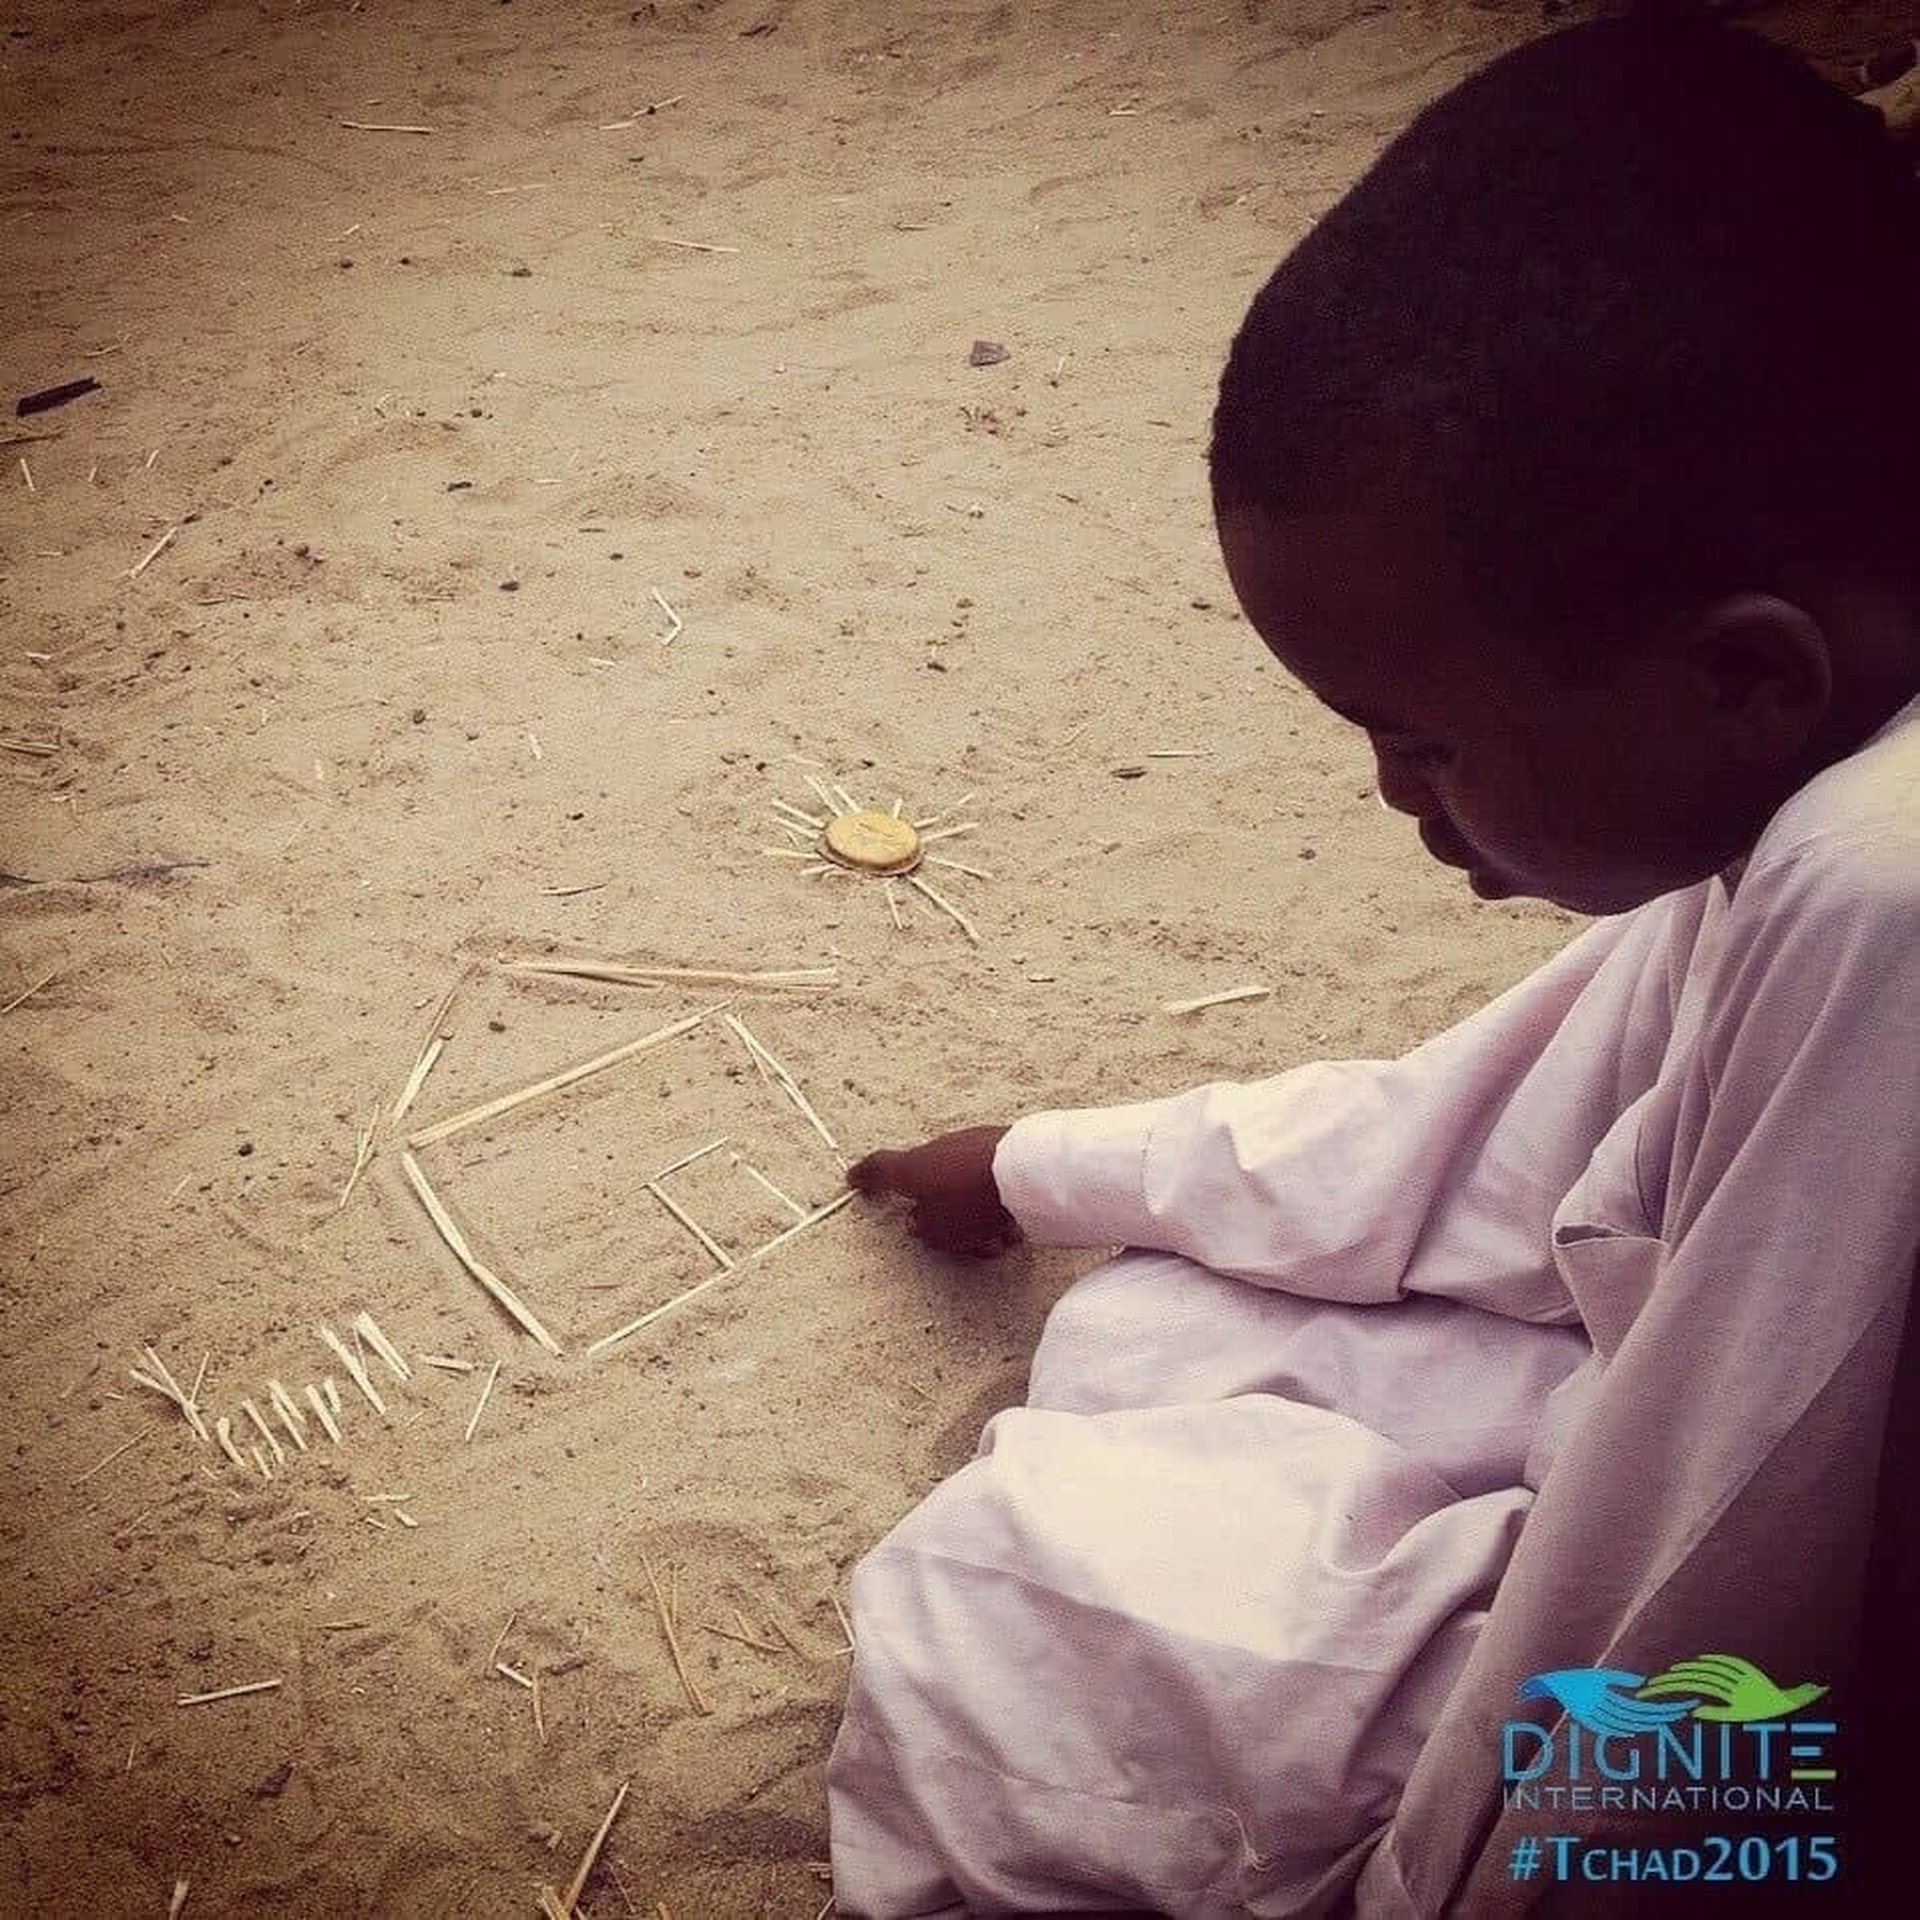 Enfant africain qui dessine une maison sur le sable apportons lui une aide humanitaire au Tchad